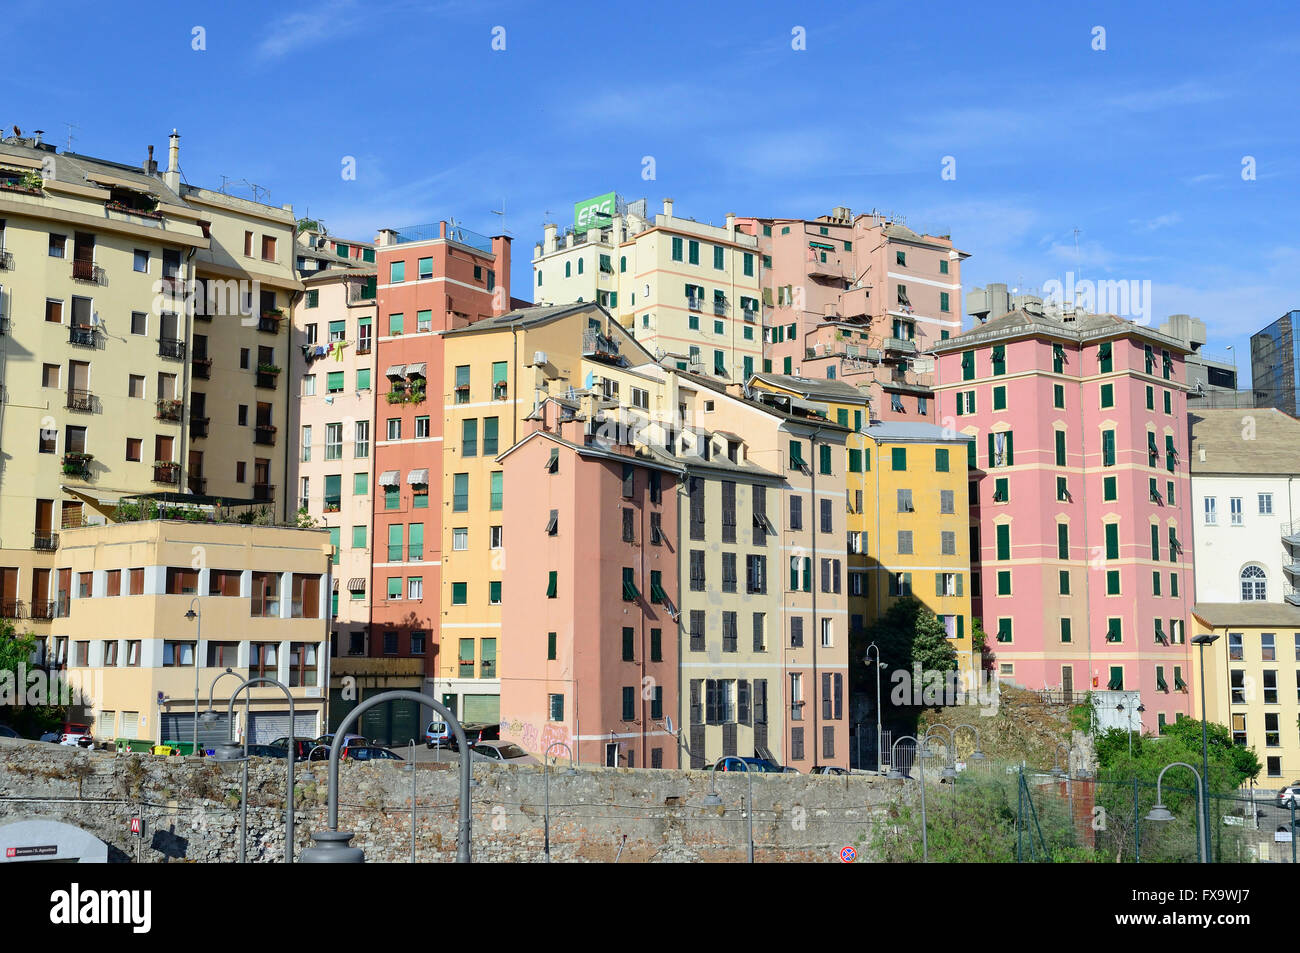 Cityscape, Mura delle Grazie, Carignano district, Genoa, Ligury, Italy, Europe Stock Photo